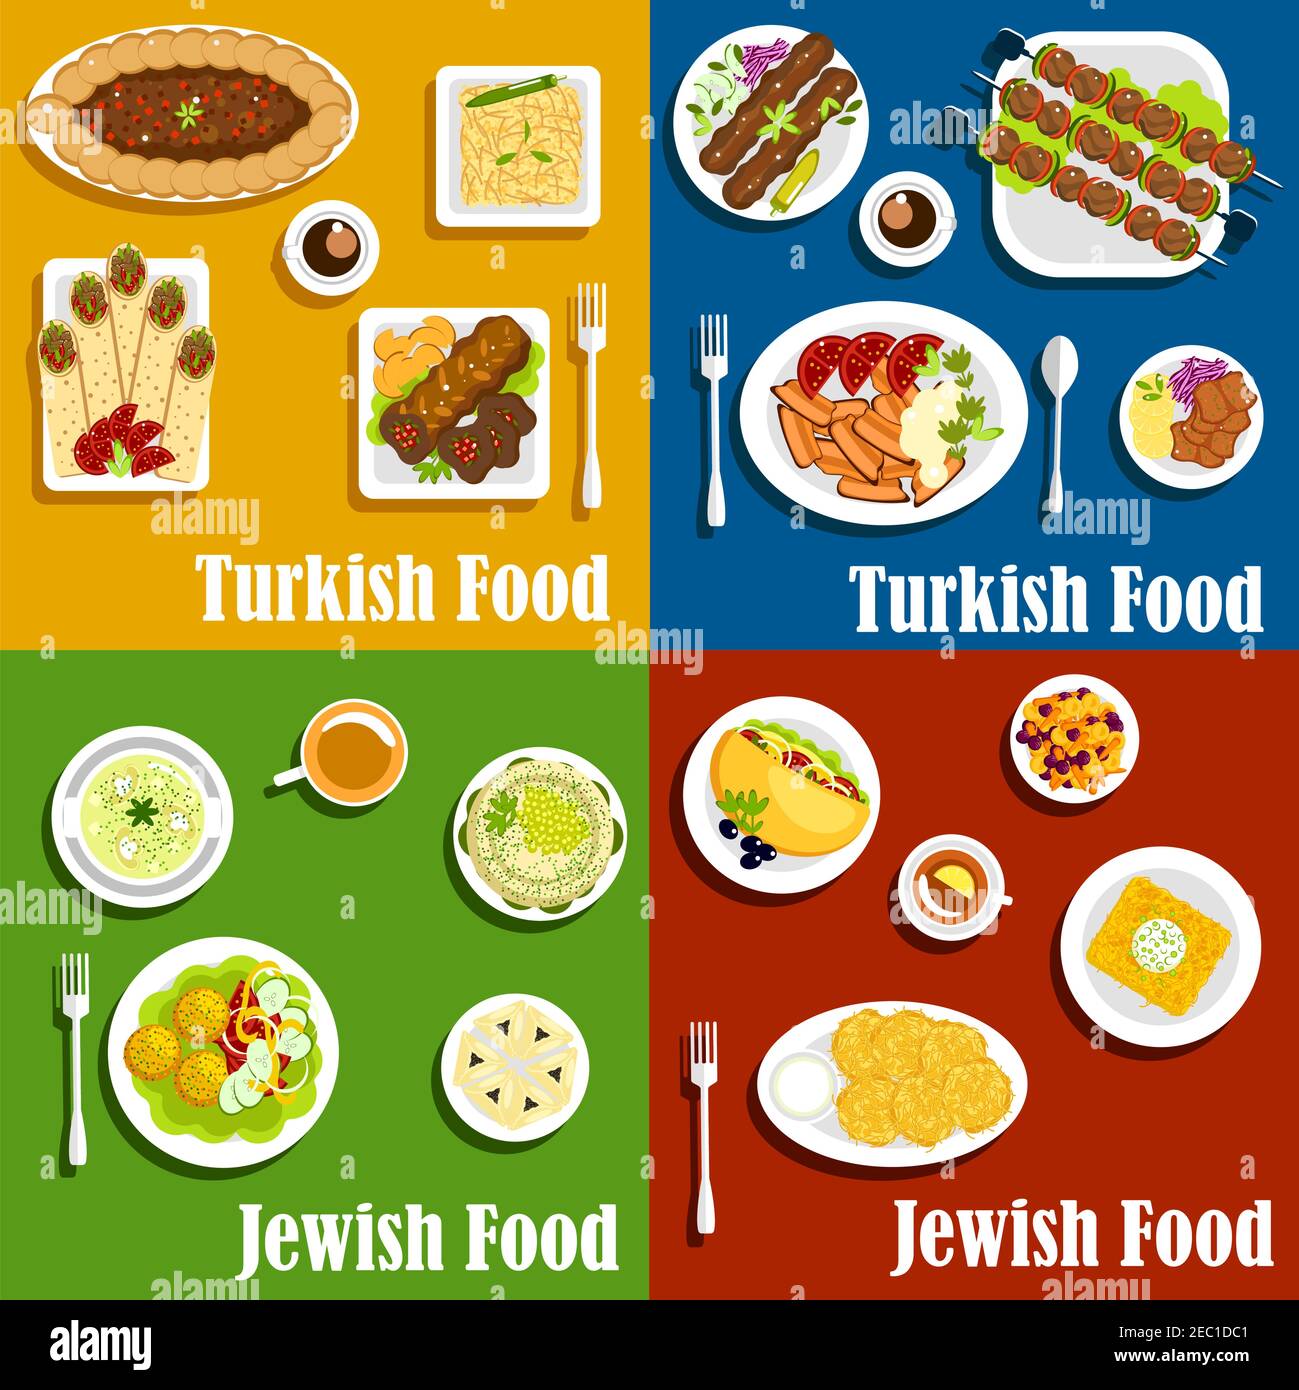 Cuisine casher juive et turque authentique avec kebabs et boulettes de mazzo avec garniture de légumes frais, crêpes de pommes de terre, châles et wrafel, Illustration de Vecteur